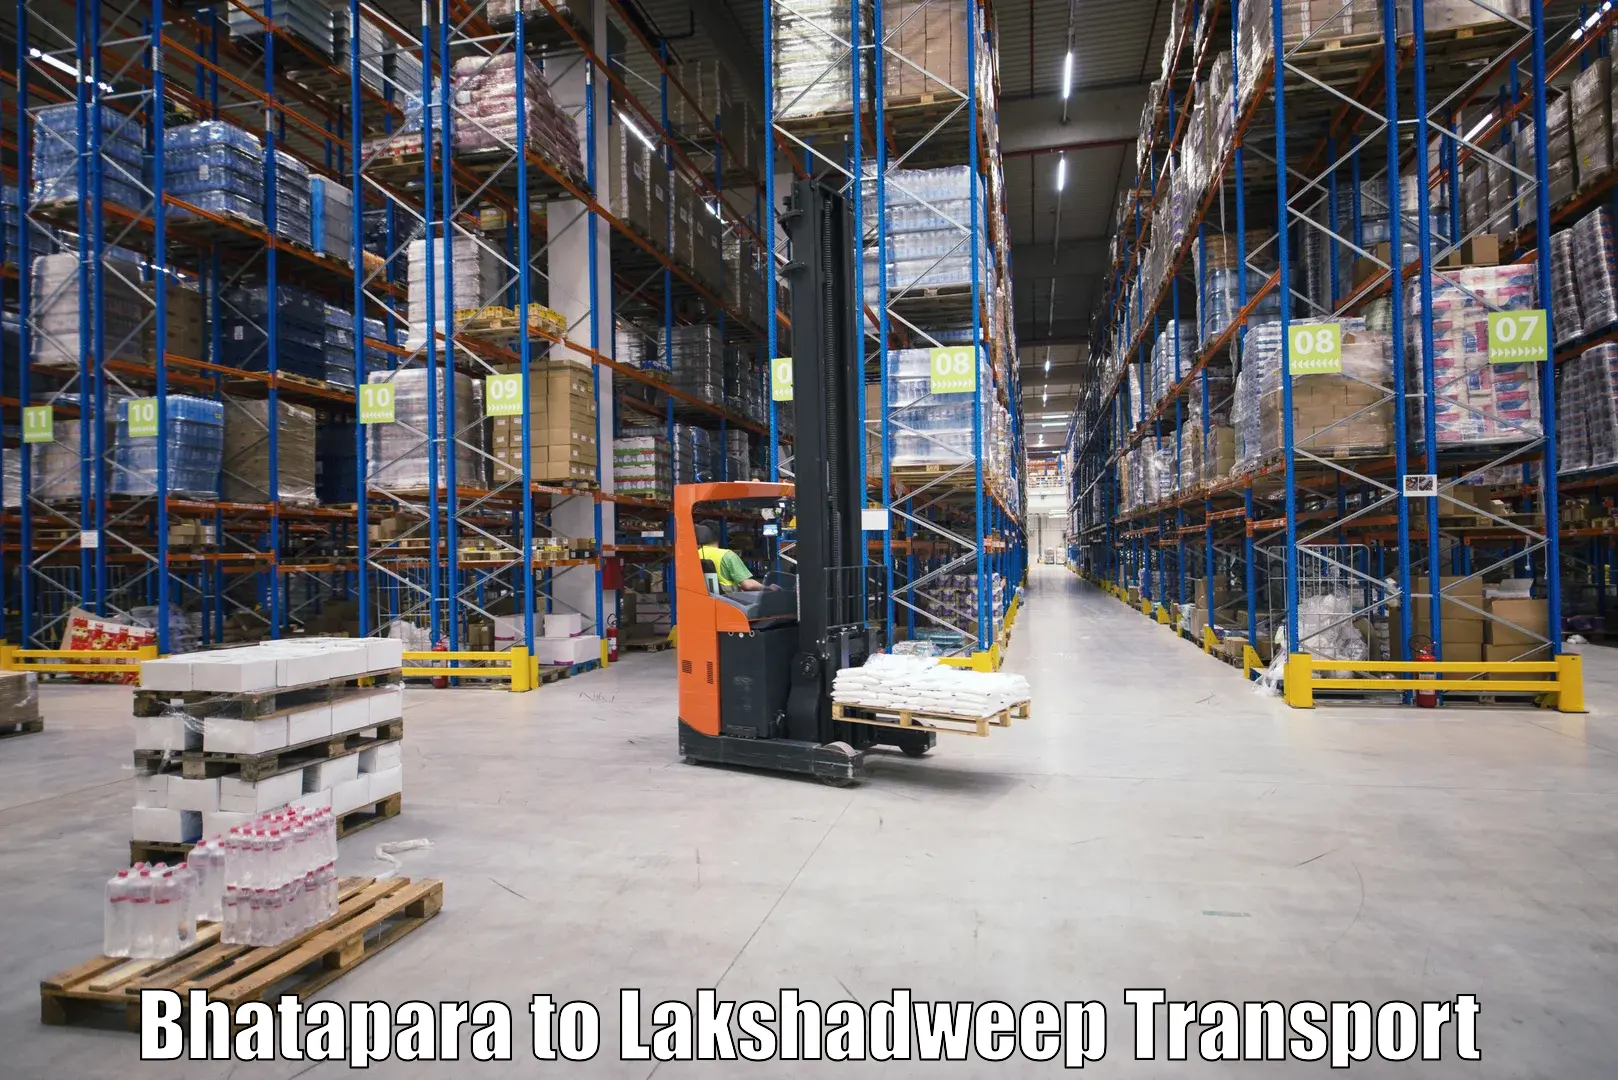 Land transport services Bhatapara to Lakshadweep